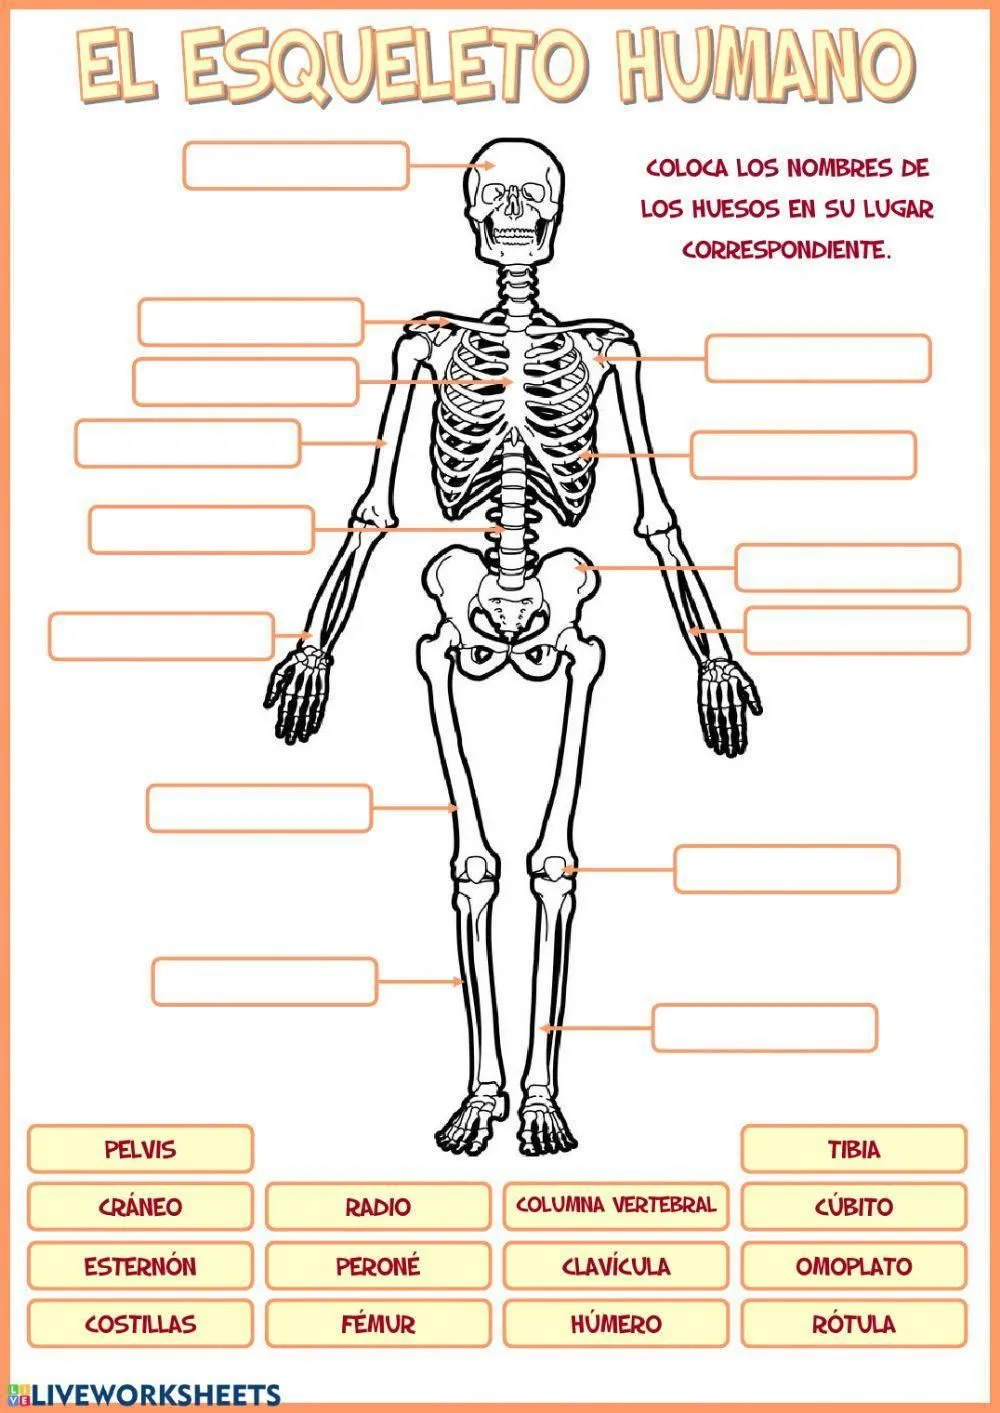 El esqueleto humano worksheet | Live Worksheets